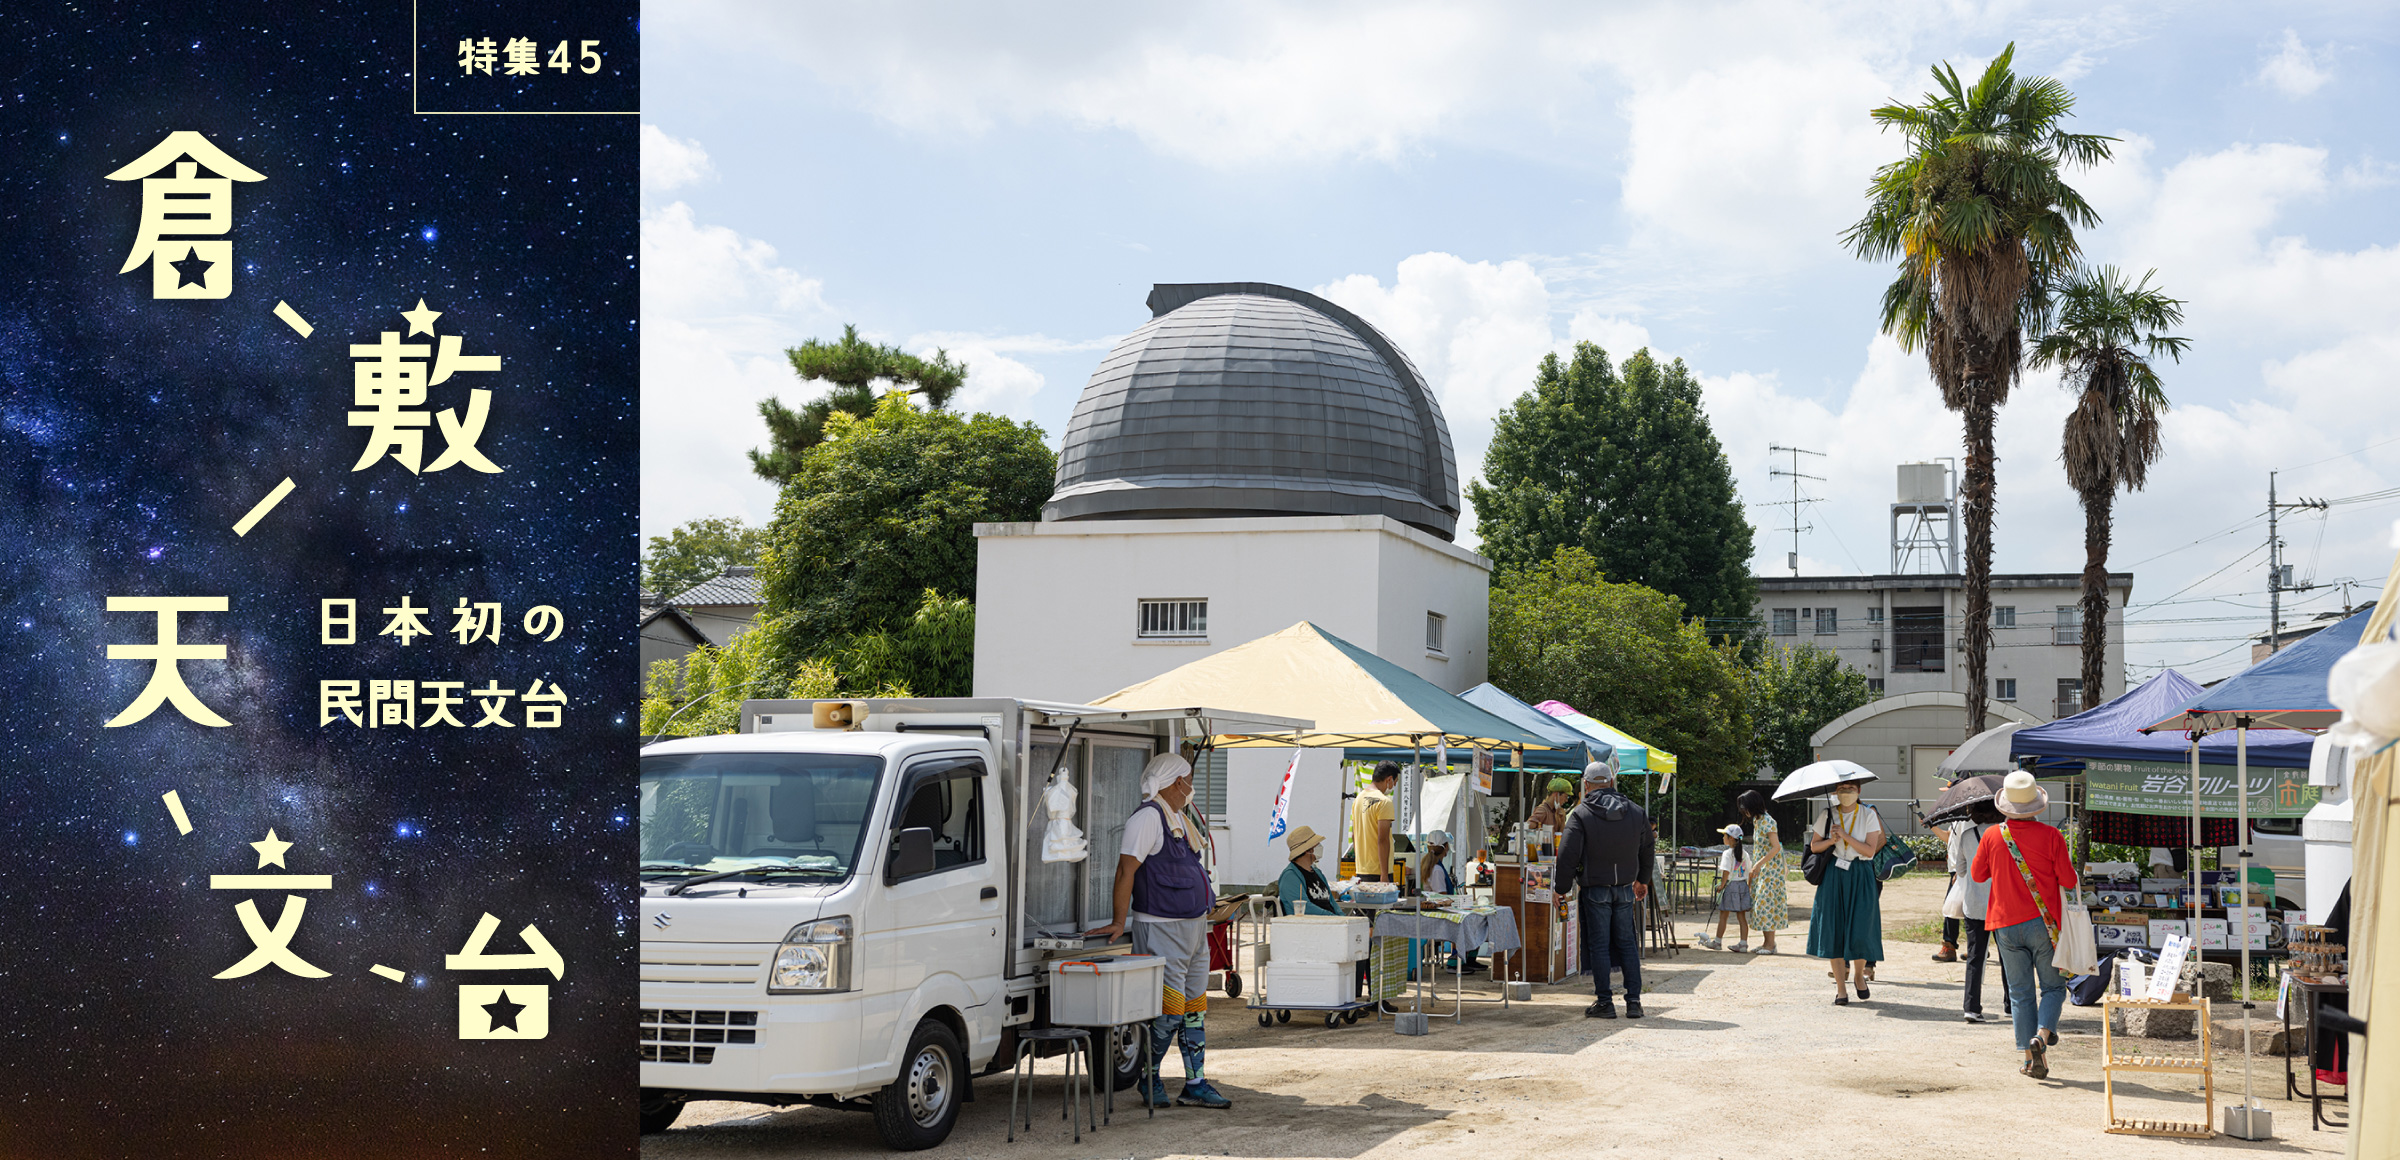 特集45 日本初の民間天文台 倉敷天文台 2026年に設立100周年を迎える倉敷天文台の今とこれから